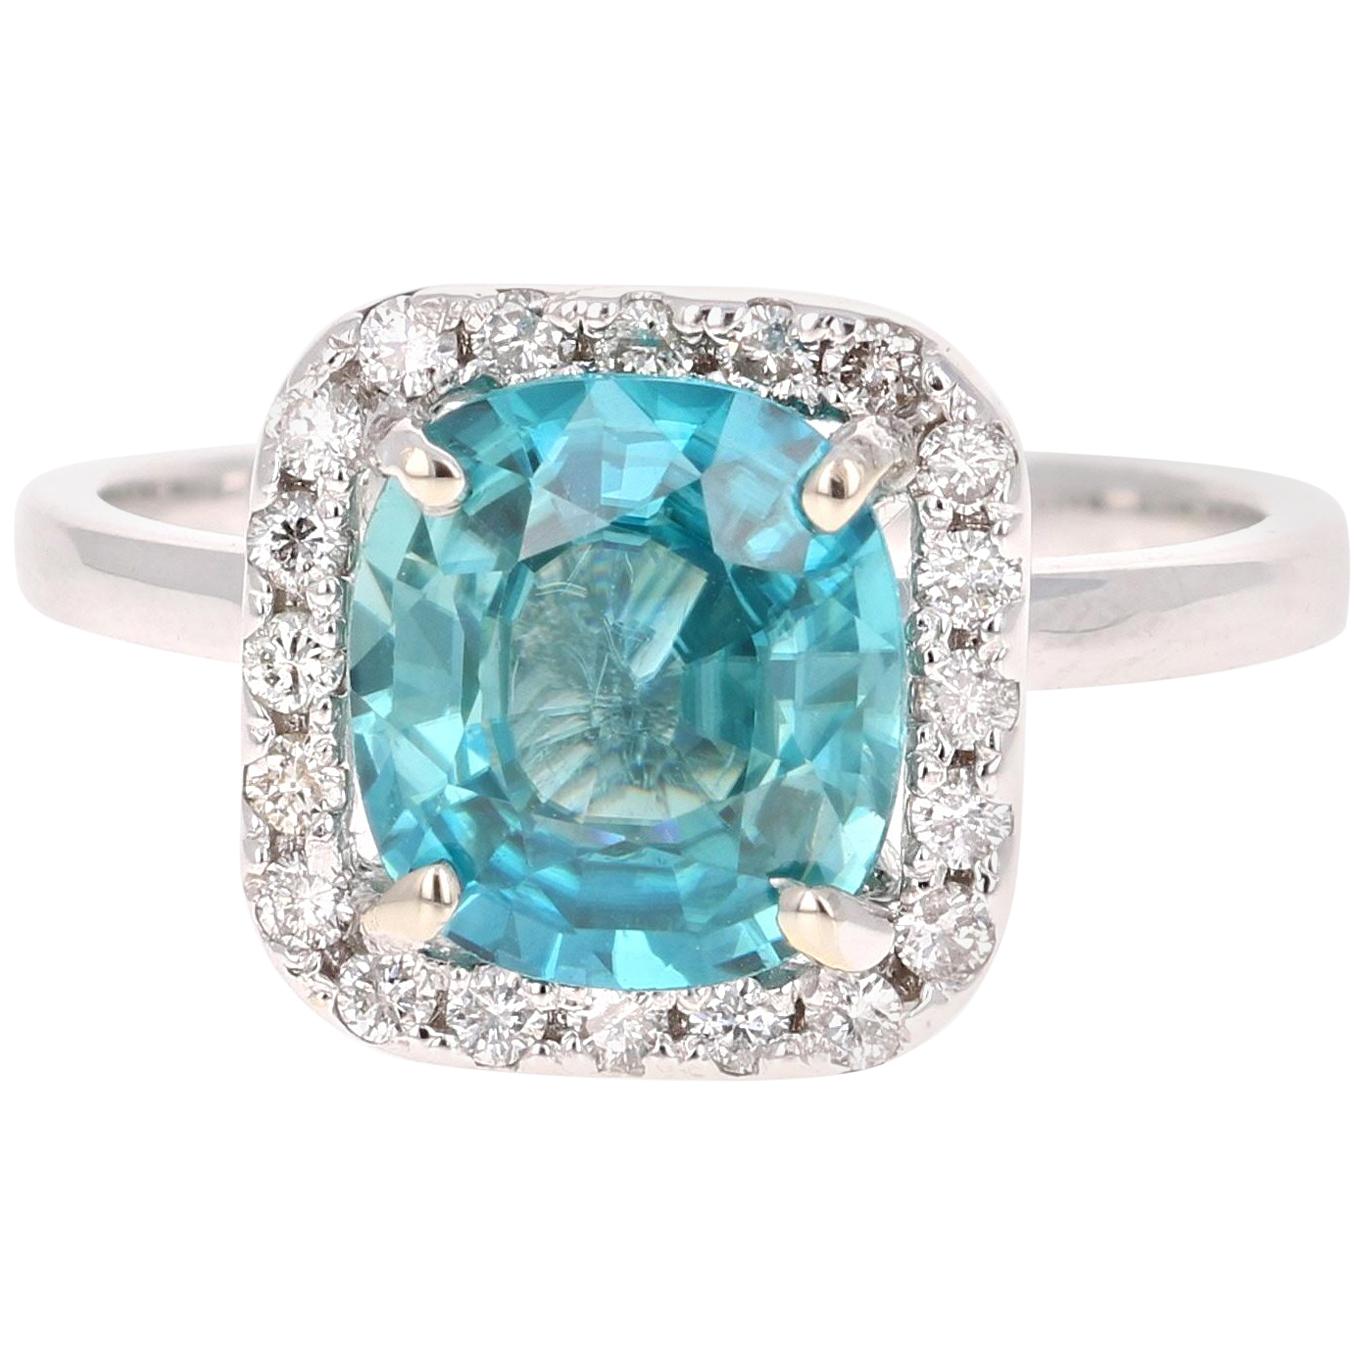 3.56 Carat Blue Zircon Diamond White Gold Engagement Ring 14 Karat White Gold